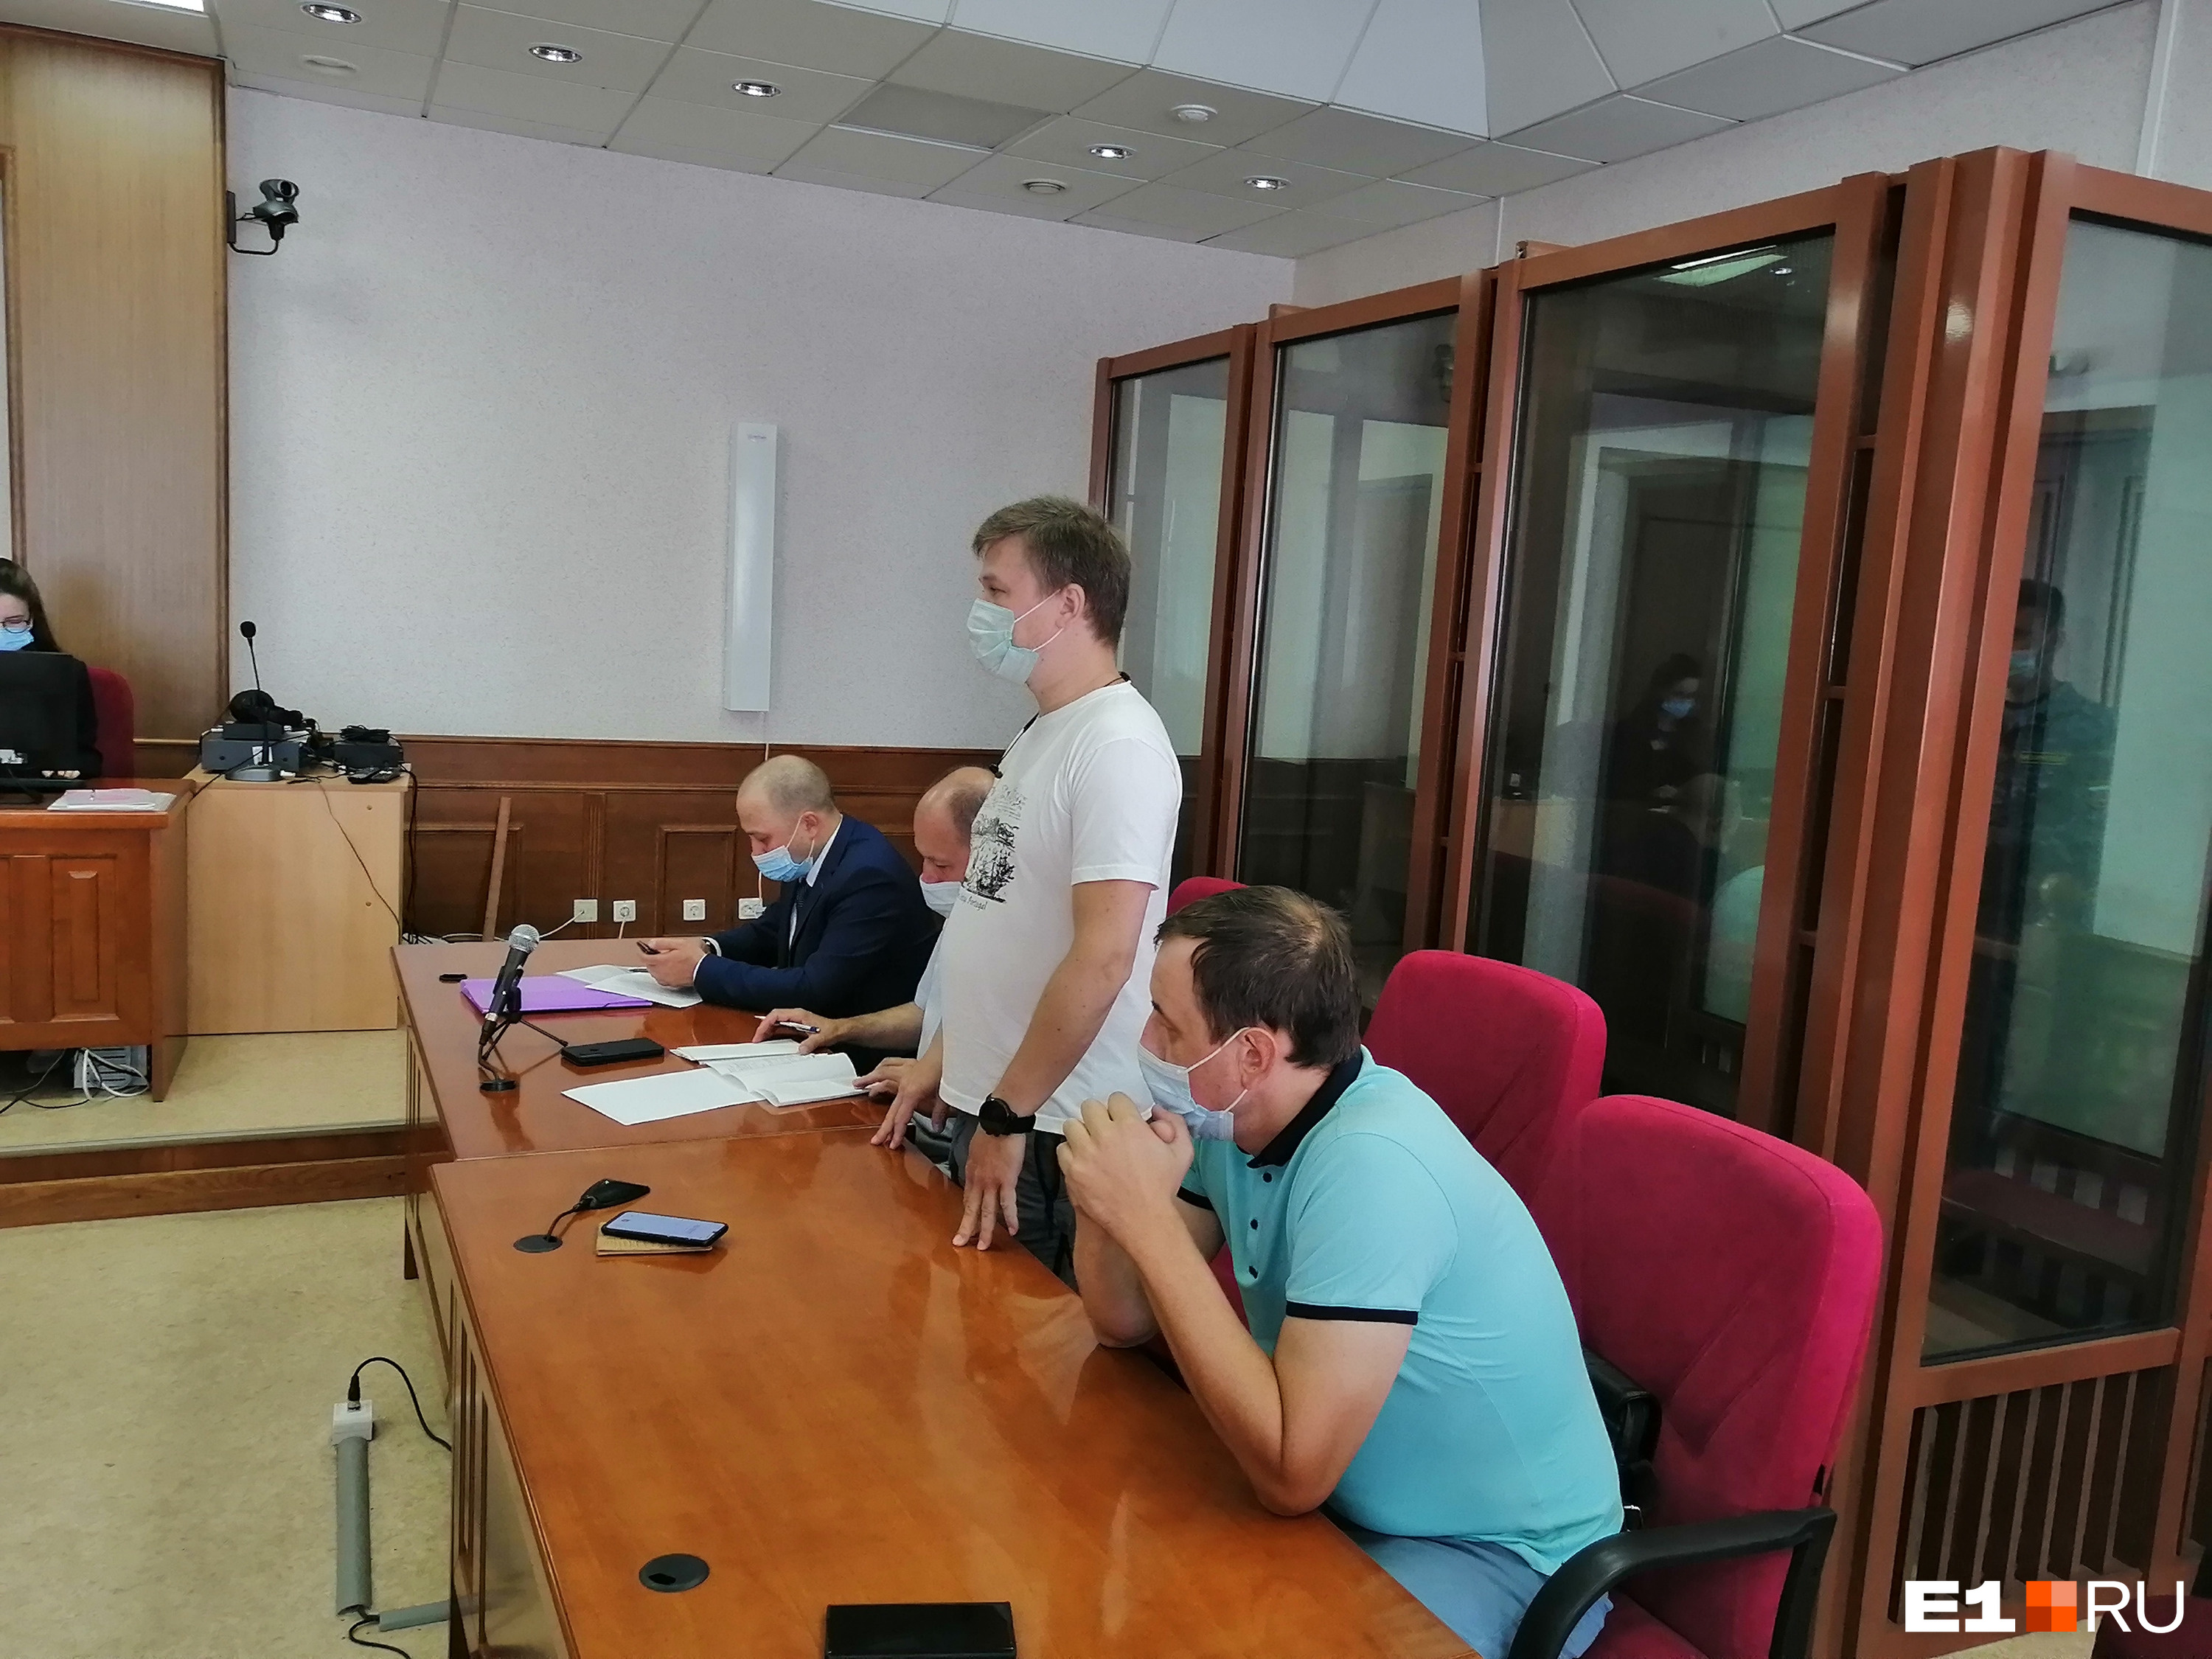 Илья Брыляков активно завлекал людей в кооператив, рассказывал об инвестициях